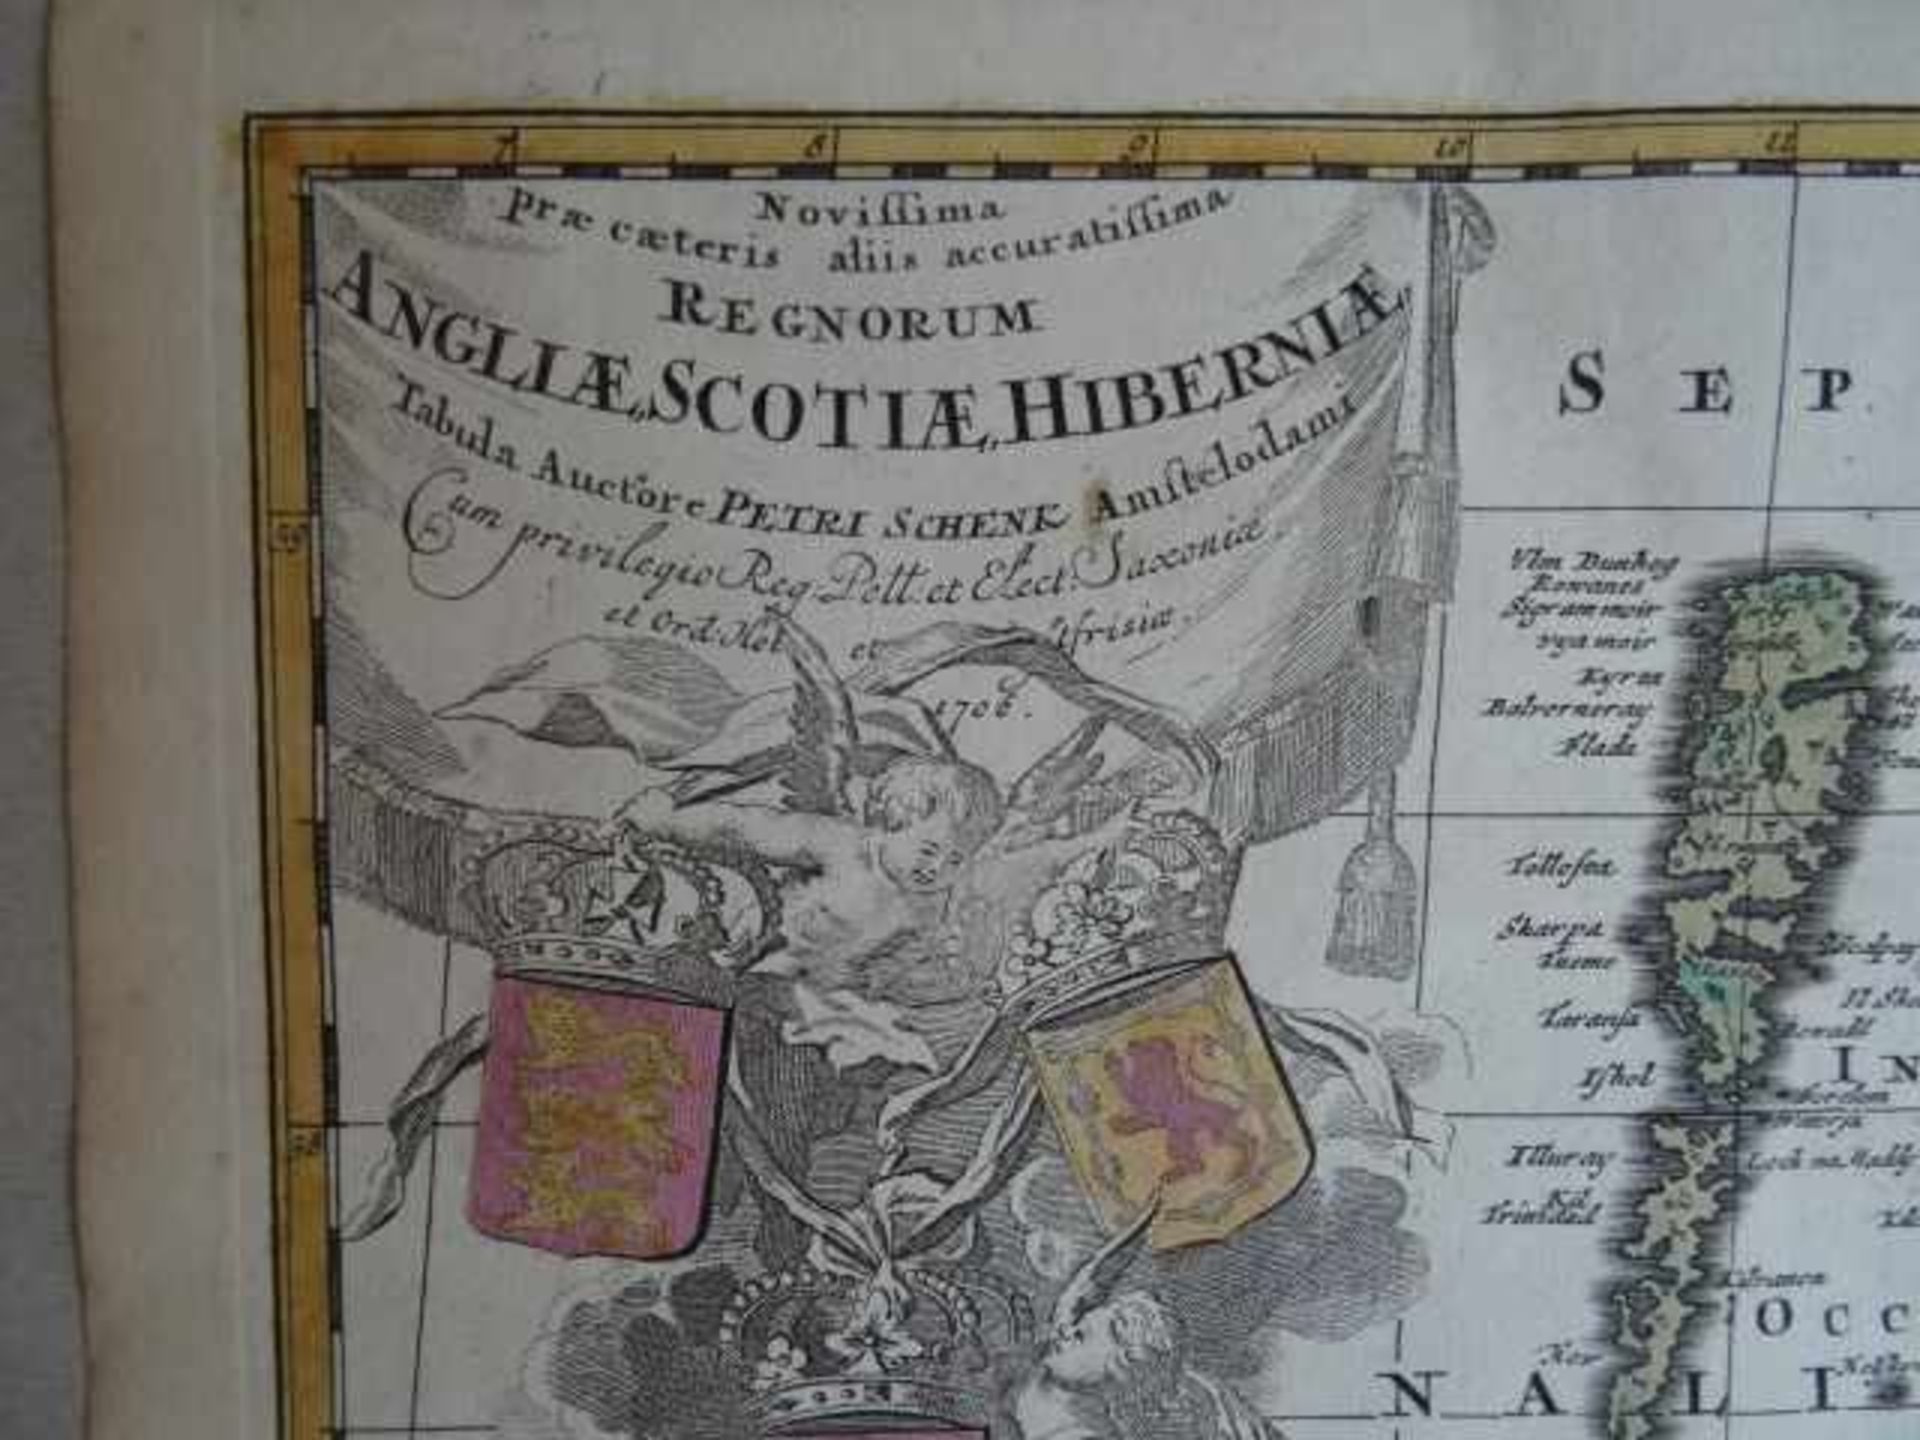 Großbritannien.- Novissima prae caeteris aliis accuratissima Regnorum Angliae, Scotiae, Hiberniae. - Bild 2 aus 4